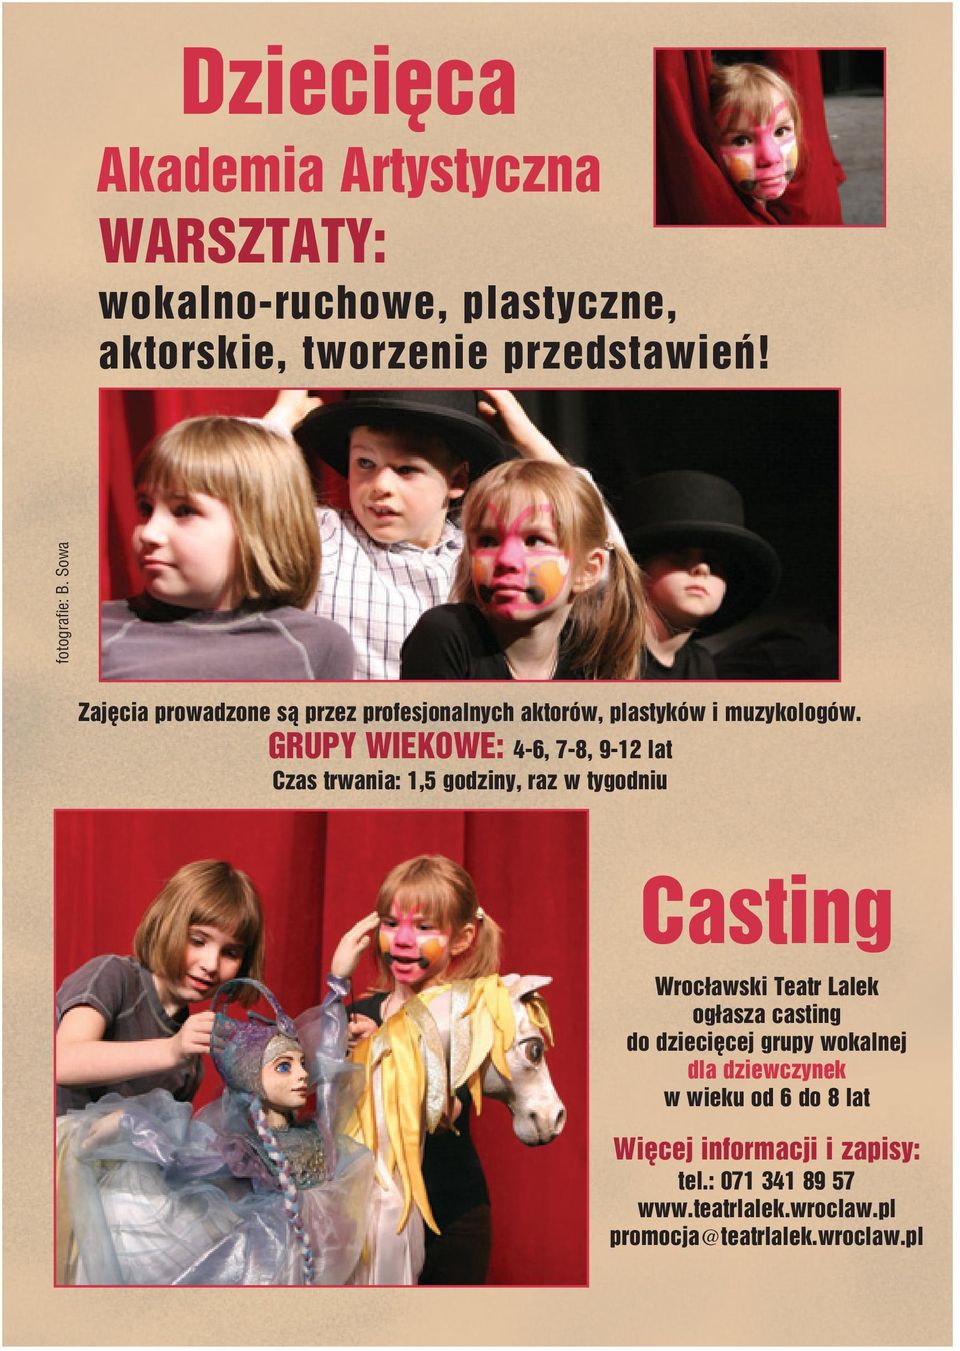 GRUPY WIEKOWE: 4 6, 7 8, 9 12 lat Czas trwania: 1,5 godziny, raz w tygodniu Casting Wrocławski Teatr Lalek ogłasza casting